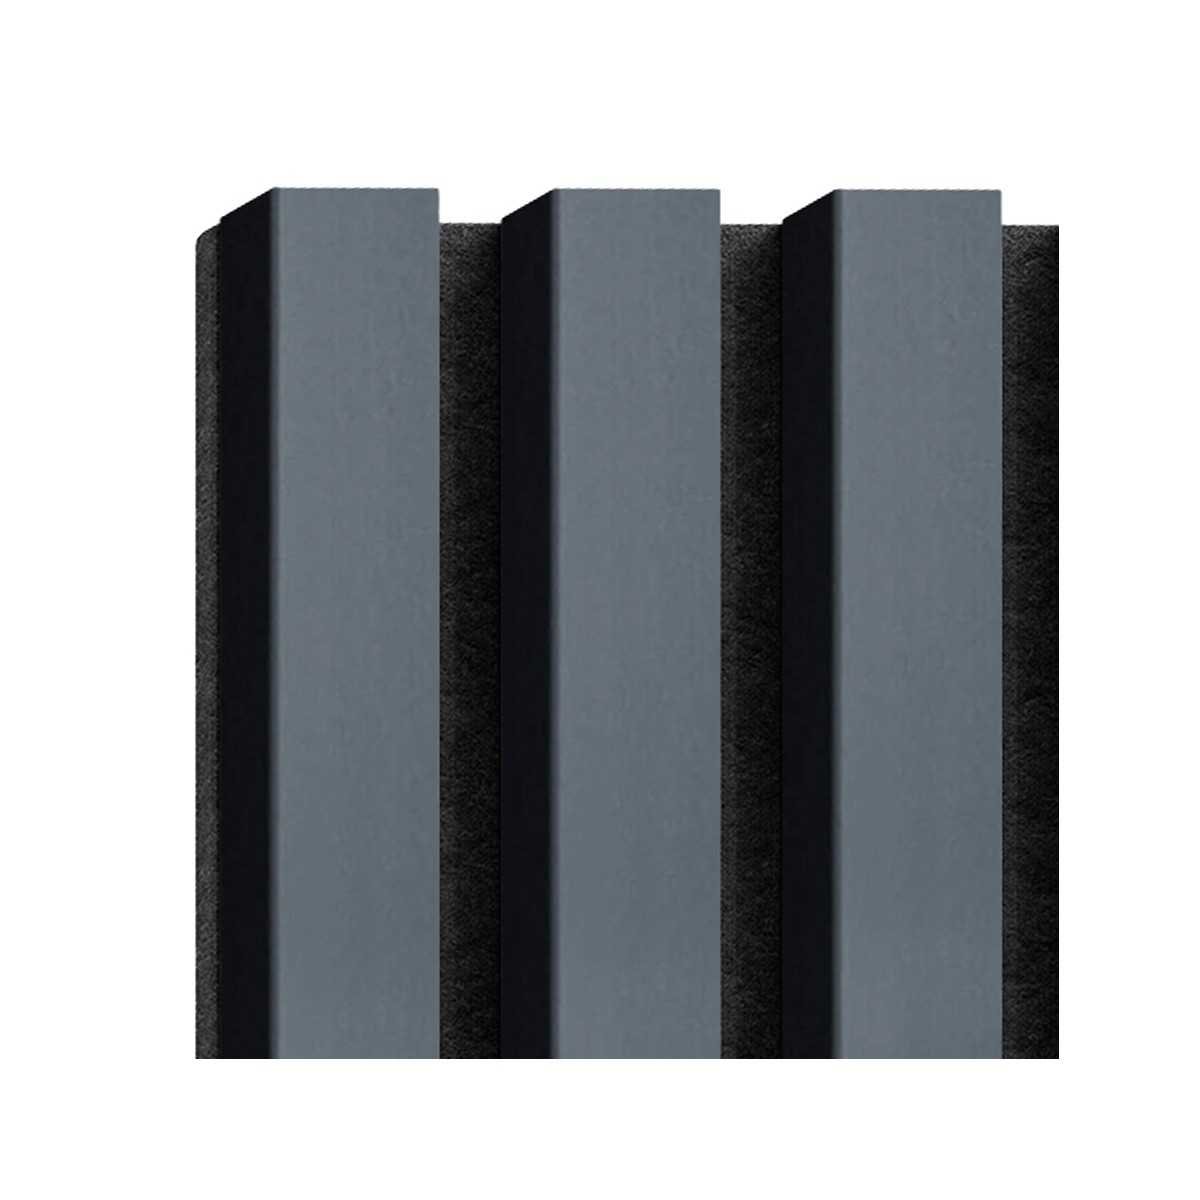 Acoustic slats sample box - Acoustic slats panel - DecorMania.eu